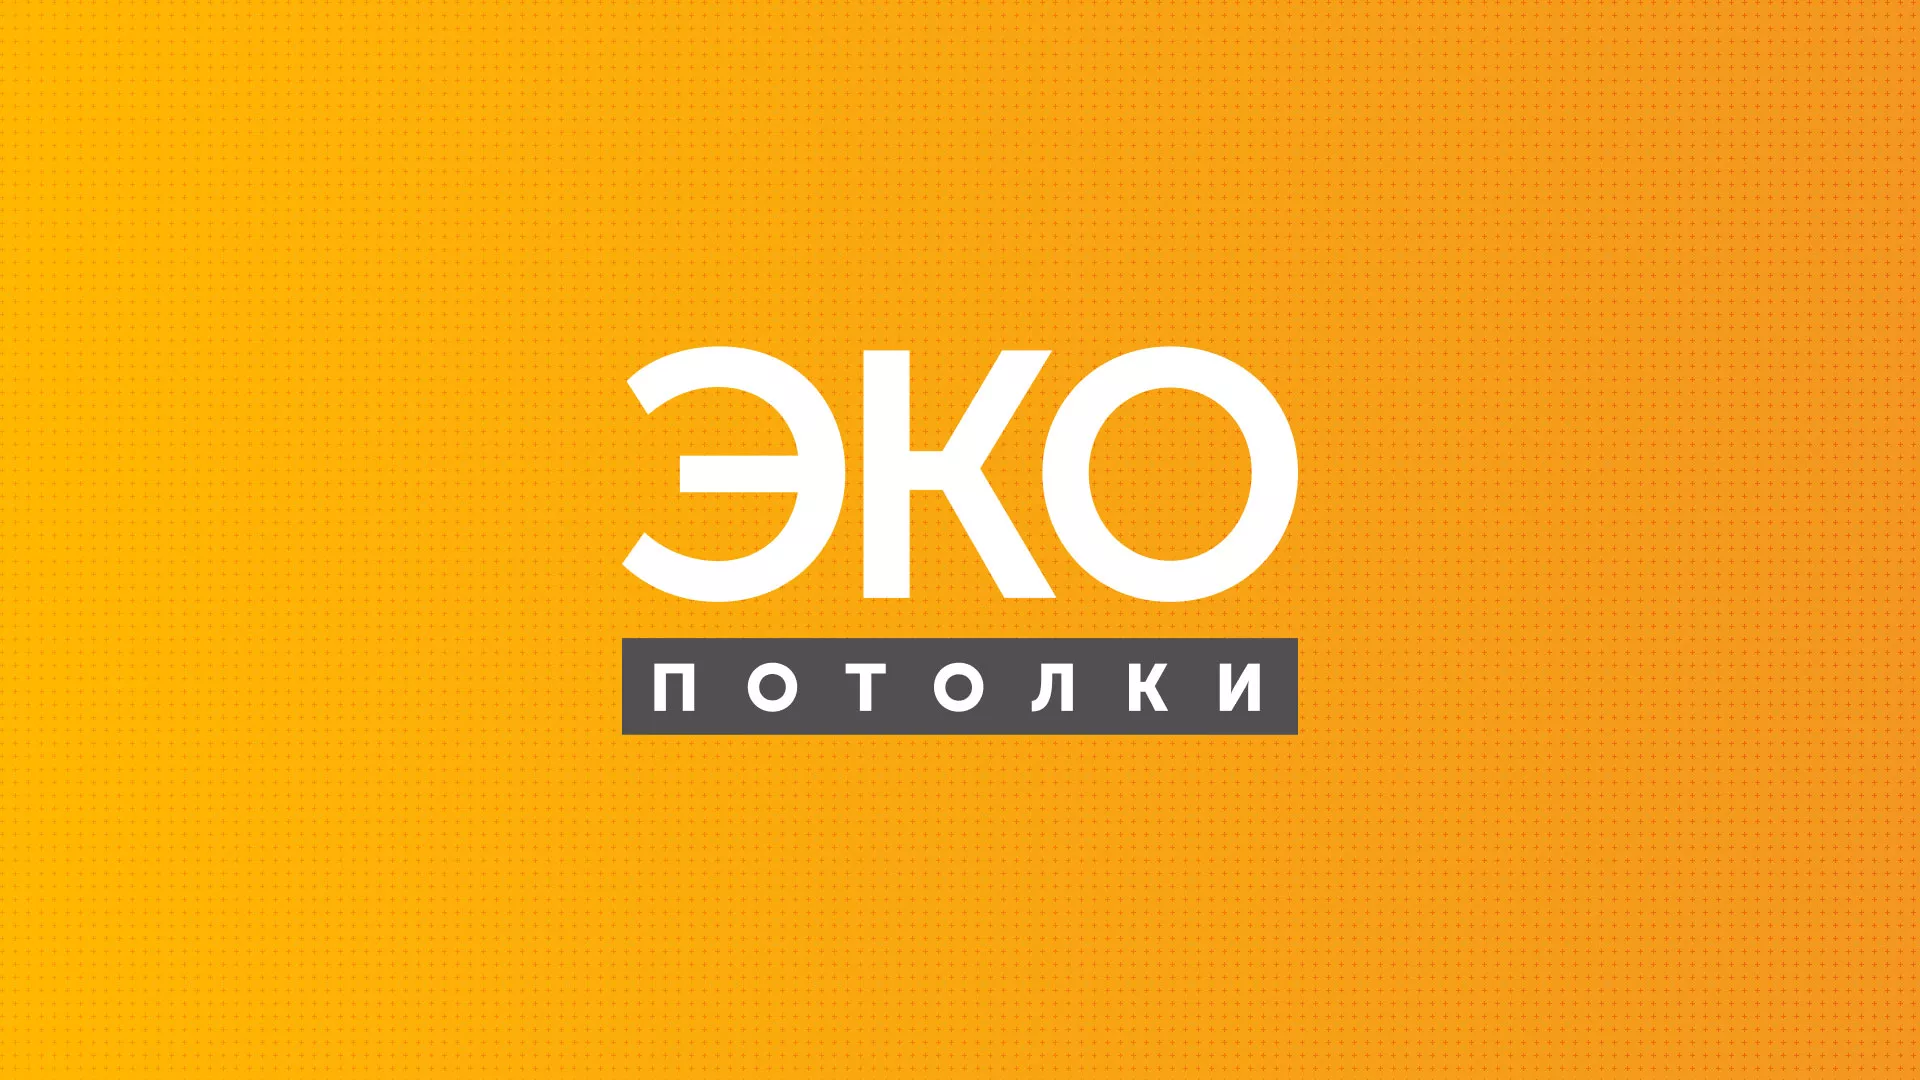 Разработка сайта по натяжным потолкам «Эко Потолки» в Томске